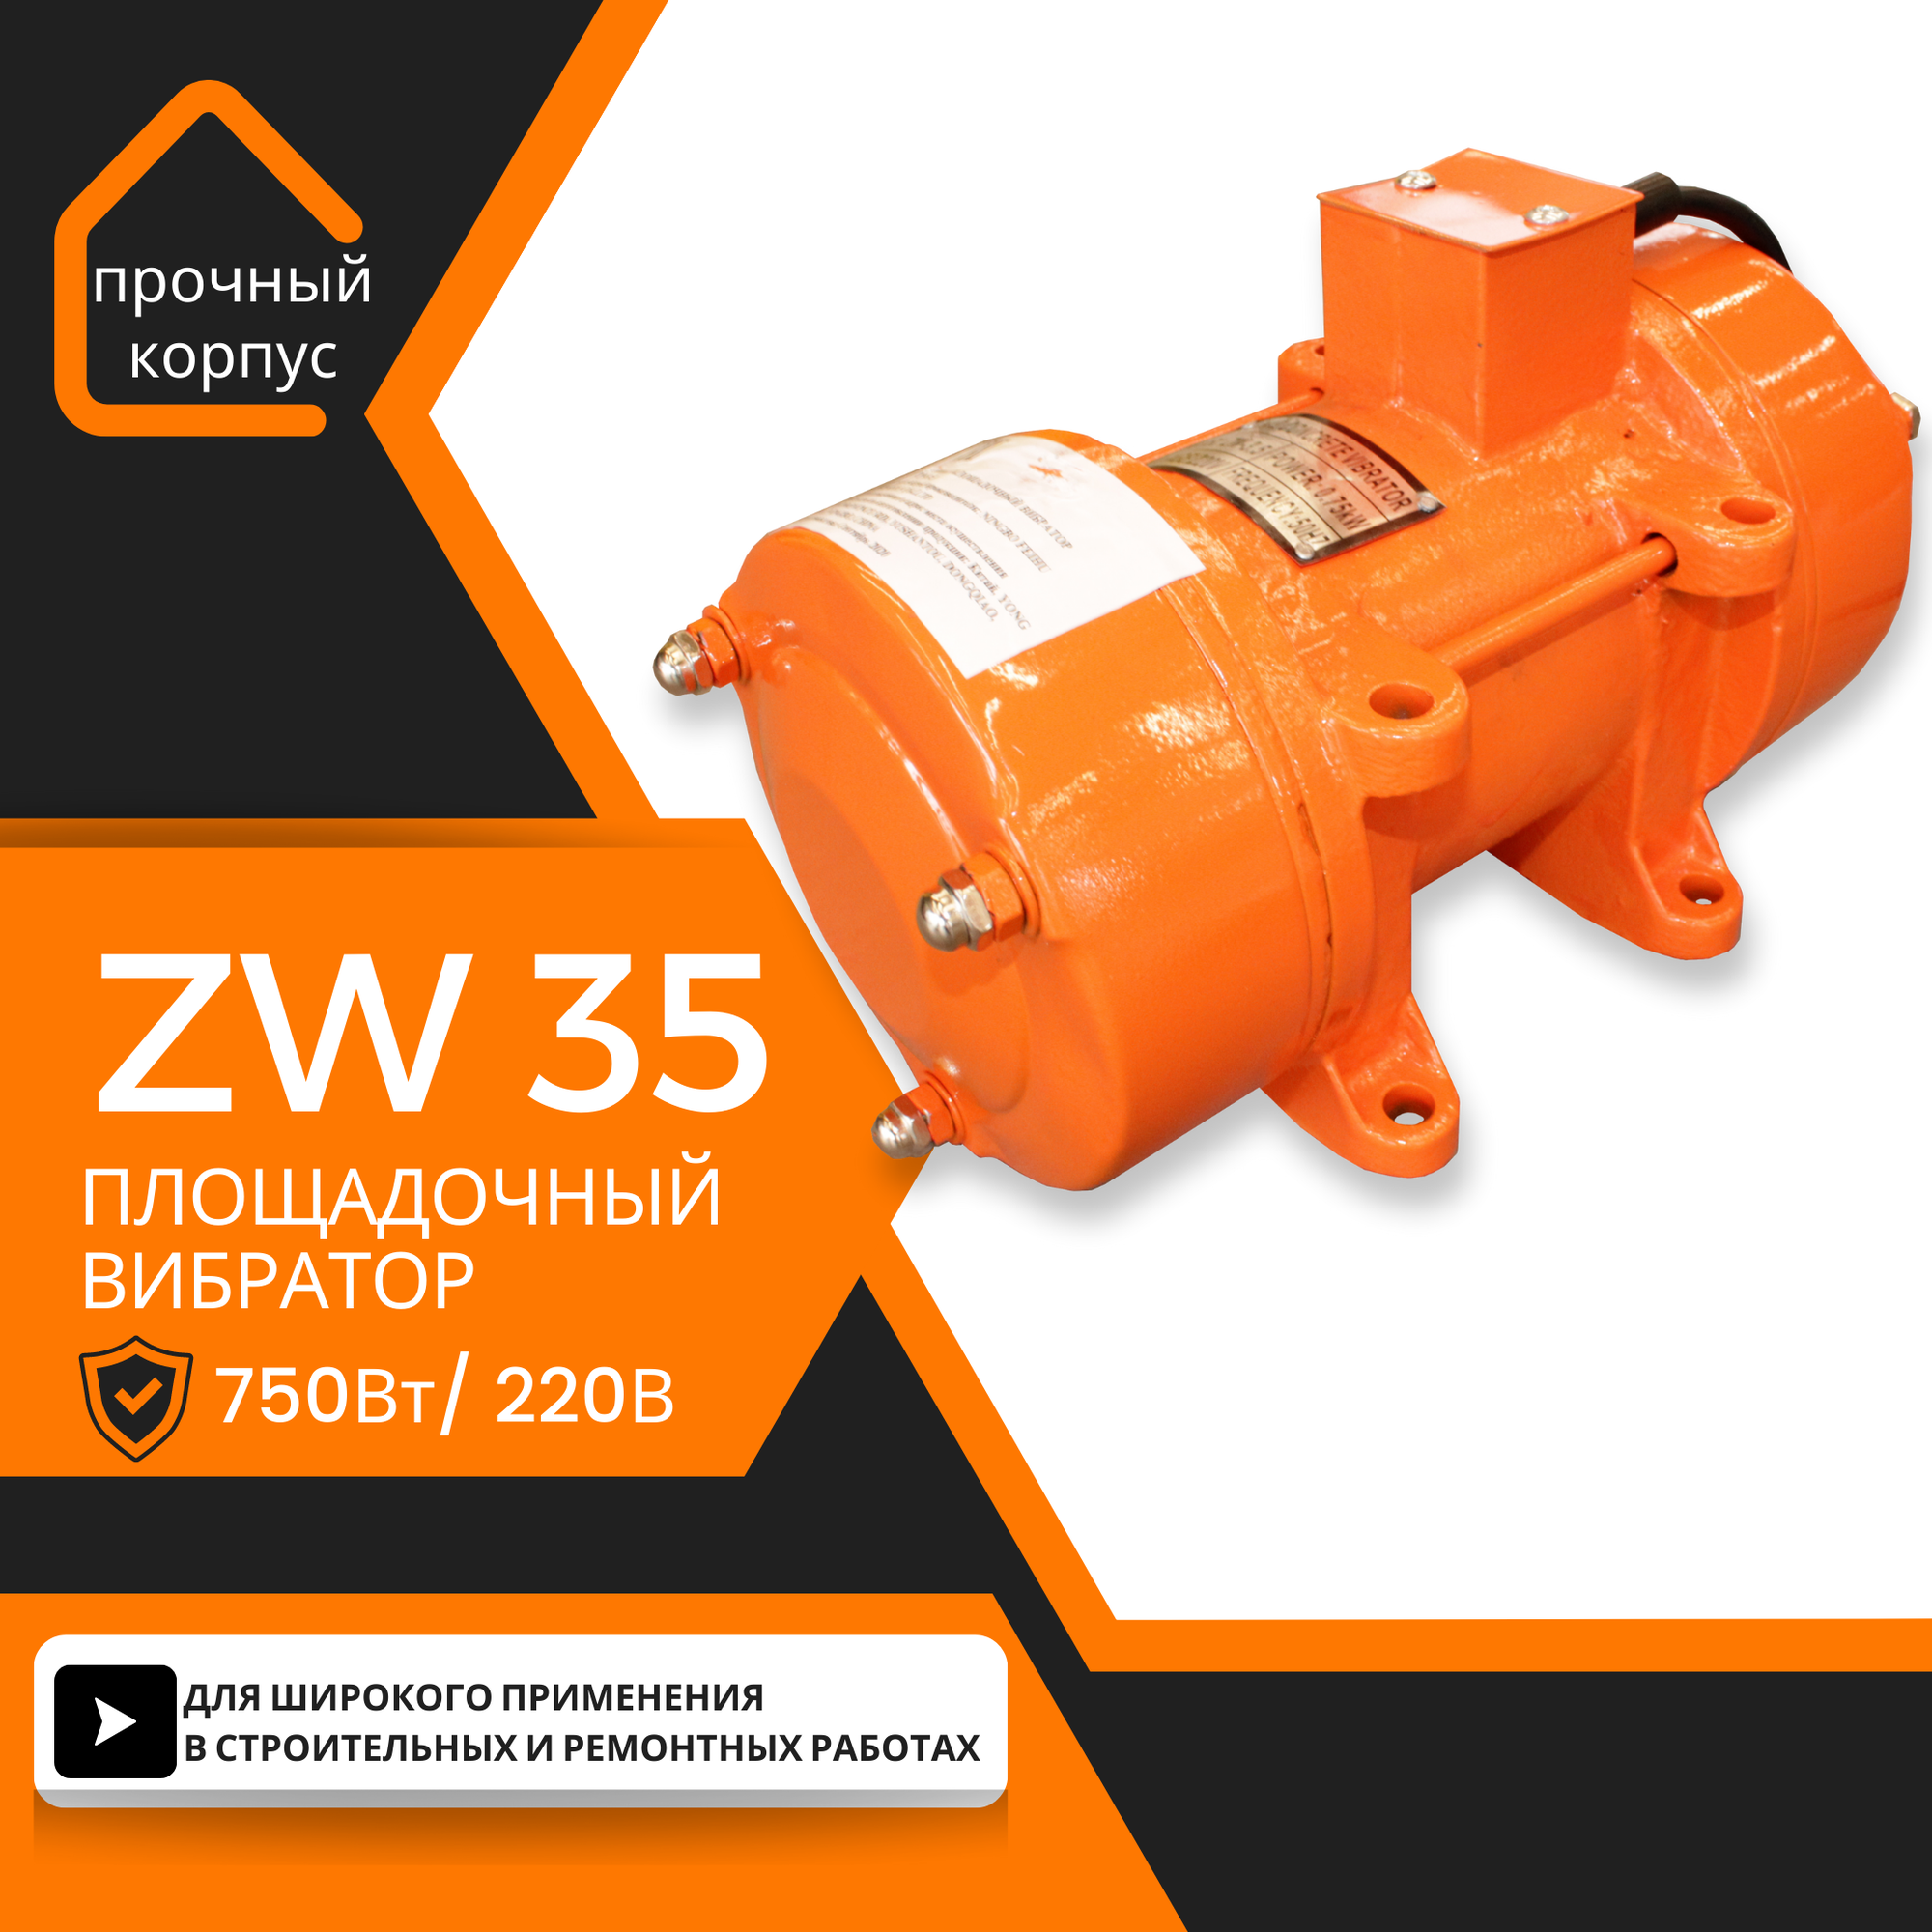 Площадочный вибратор TeaM ZW 35 (750Вт 220В)